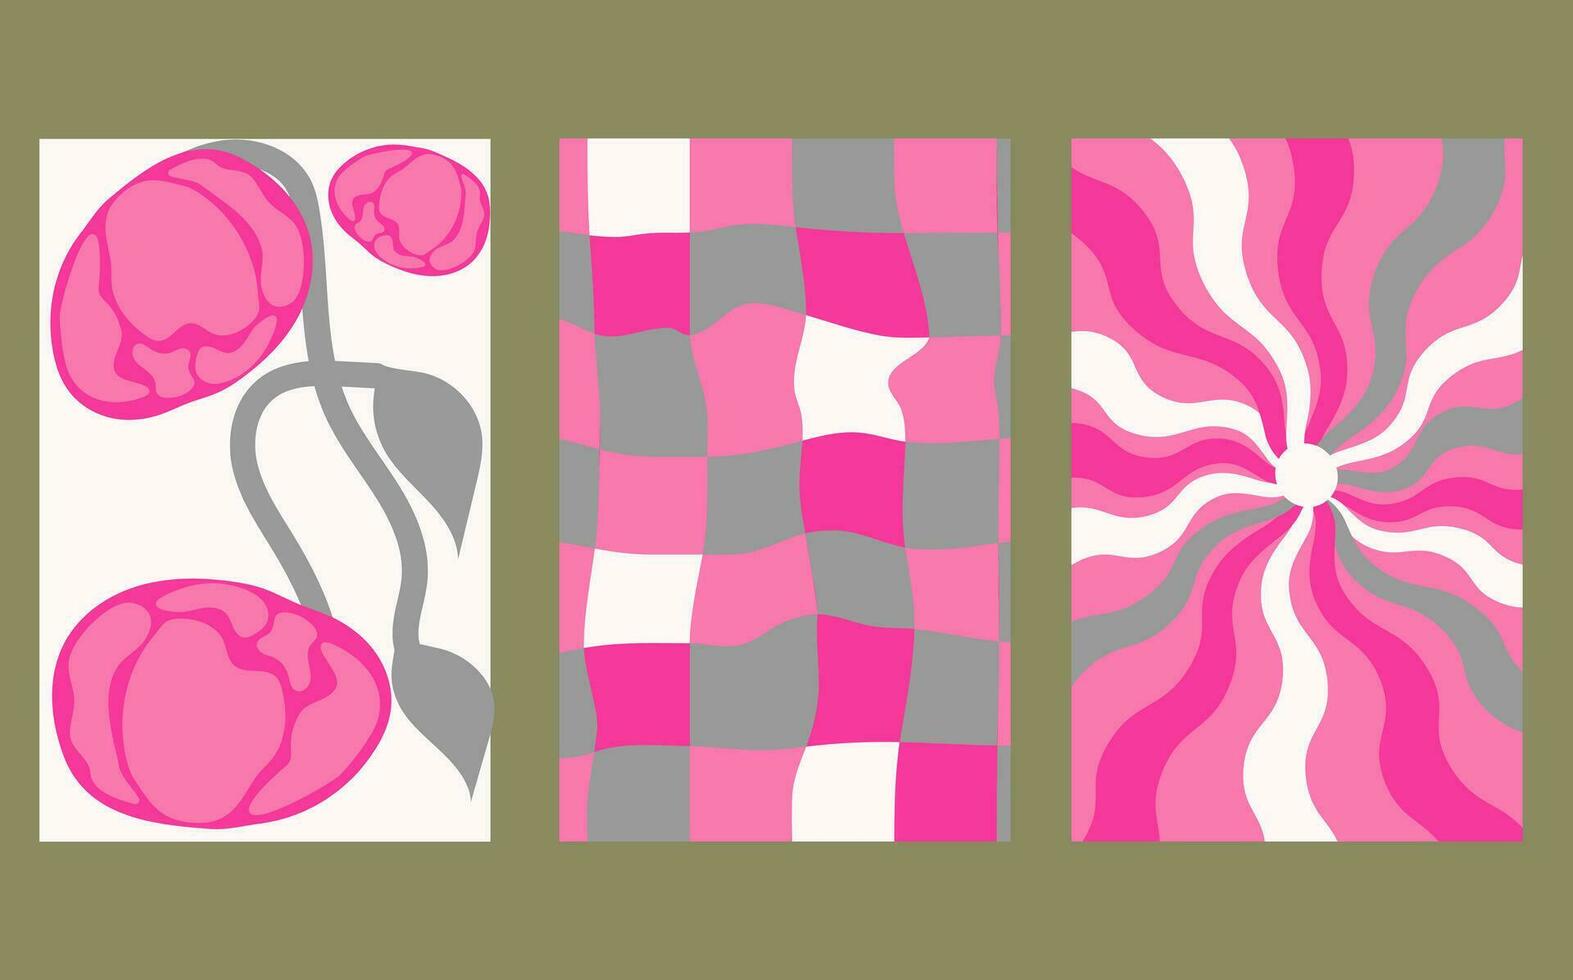 Sammlung von retro Schachbrett Hintergründe mit lebendig Farbtöne. ein groovig und psychedelisch Schachbrett Muster inspiriert durch das 60er Jahre und 70er. vektor